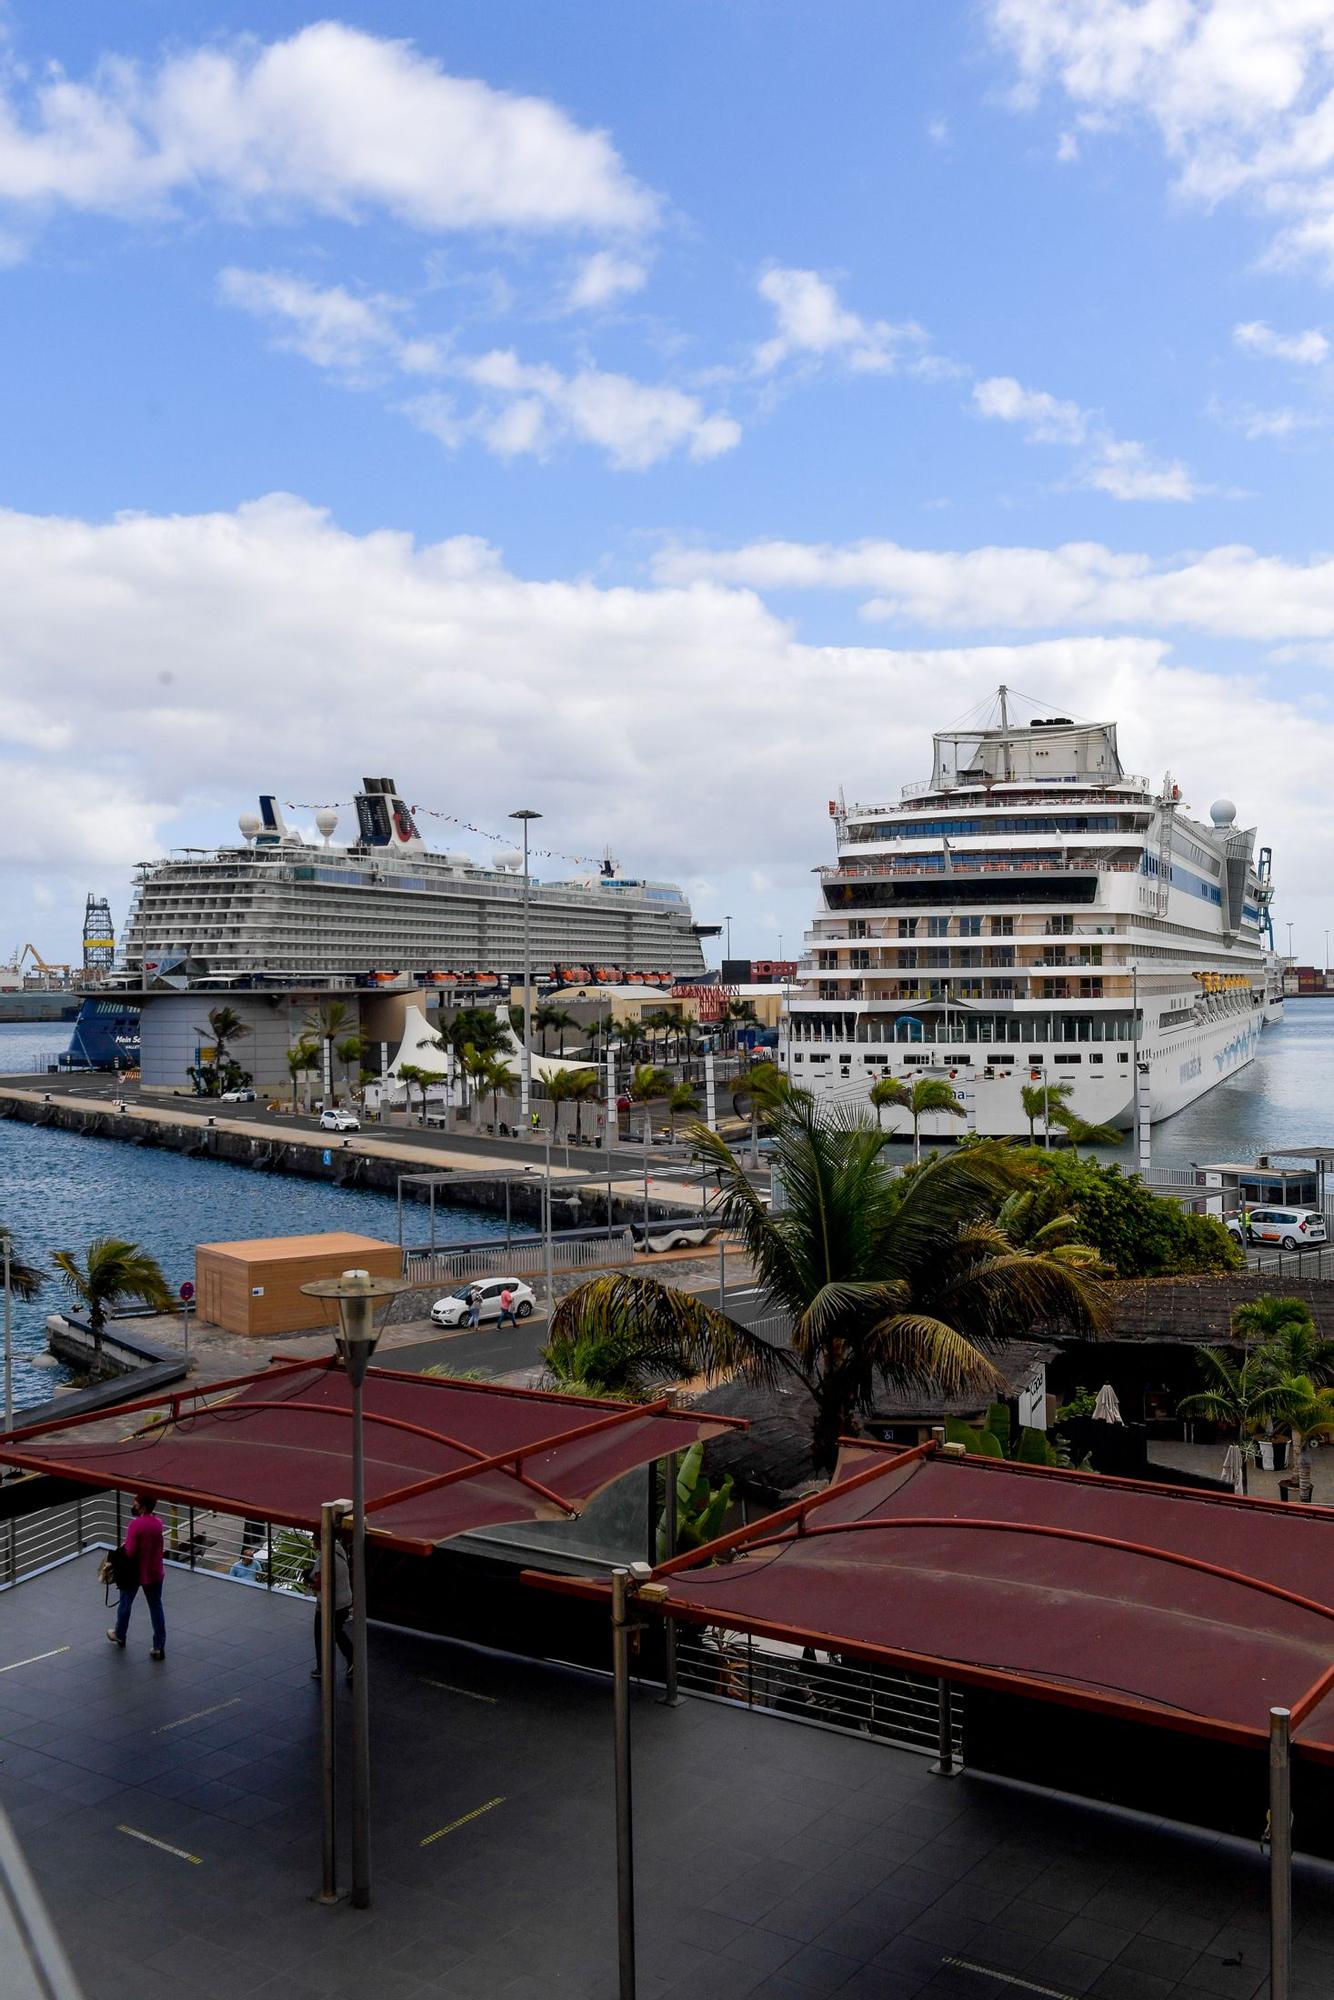 Cruceros en el Puerto de Las Palmas (07/11/2021)